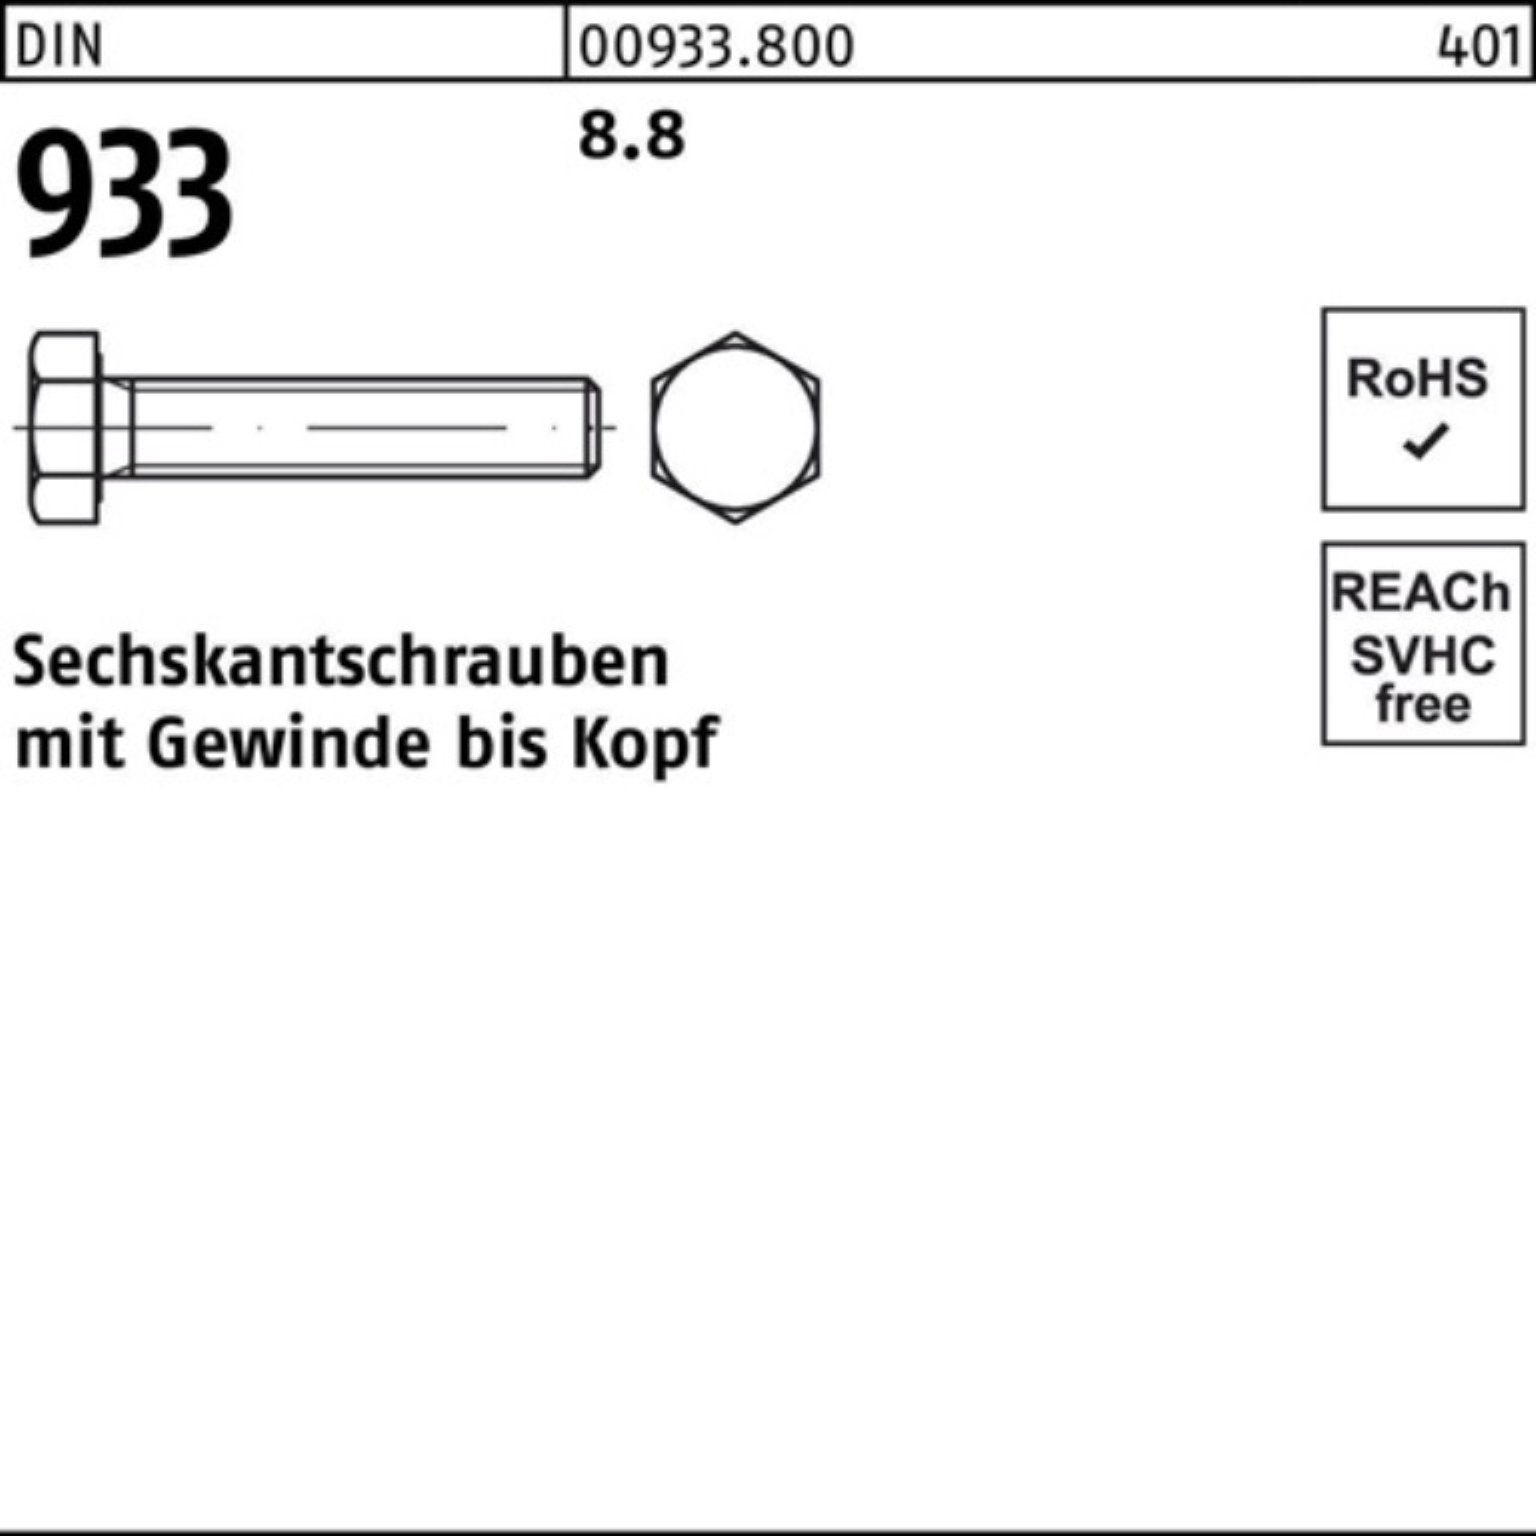 Reyher Sechskantschraube 100er Pack 933 DIN 8.8 M42x 140 DIN Sechskantschraube Stück 933 1 VG